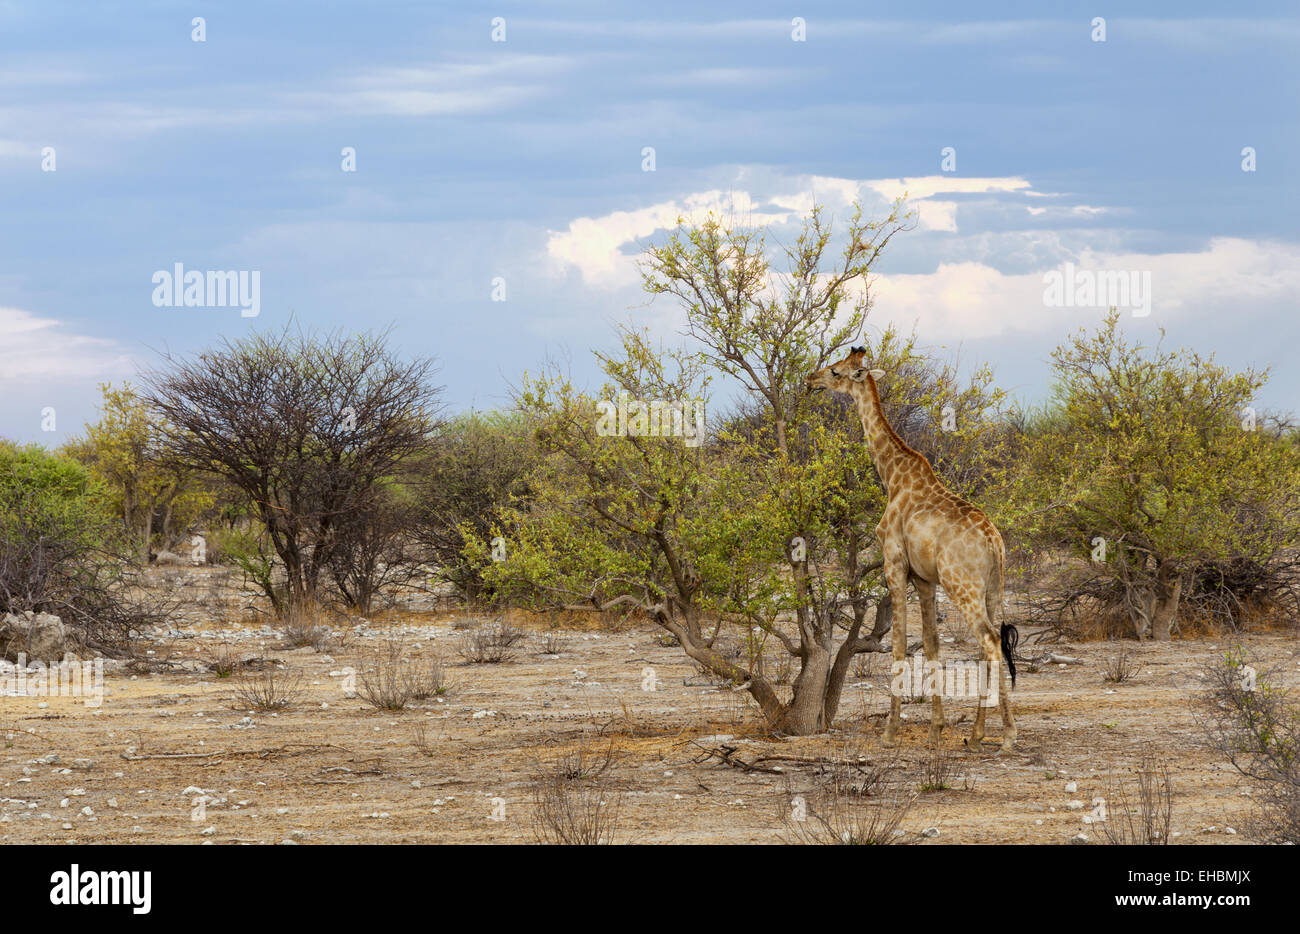 Giraffe - Giraffa camelopardalis Stock Photo